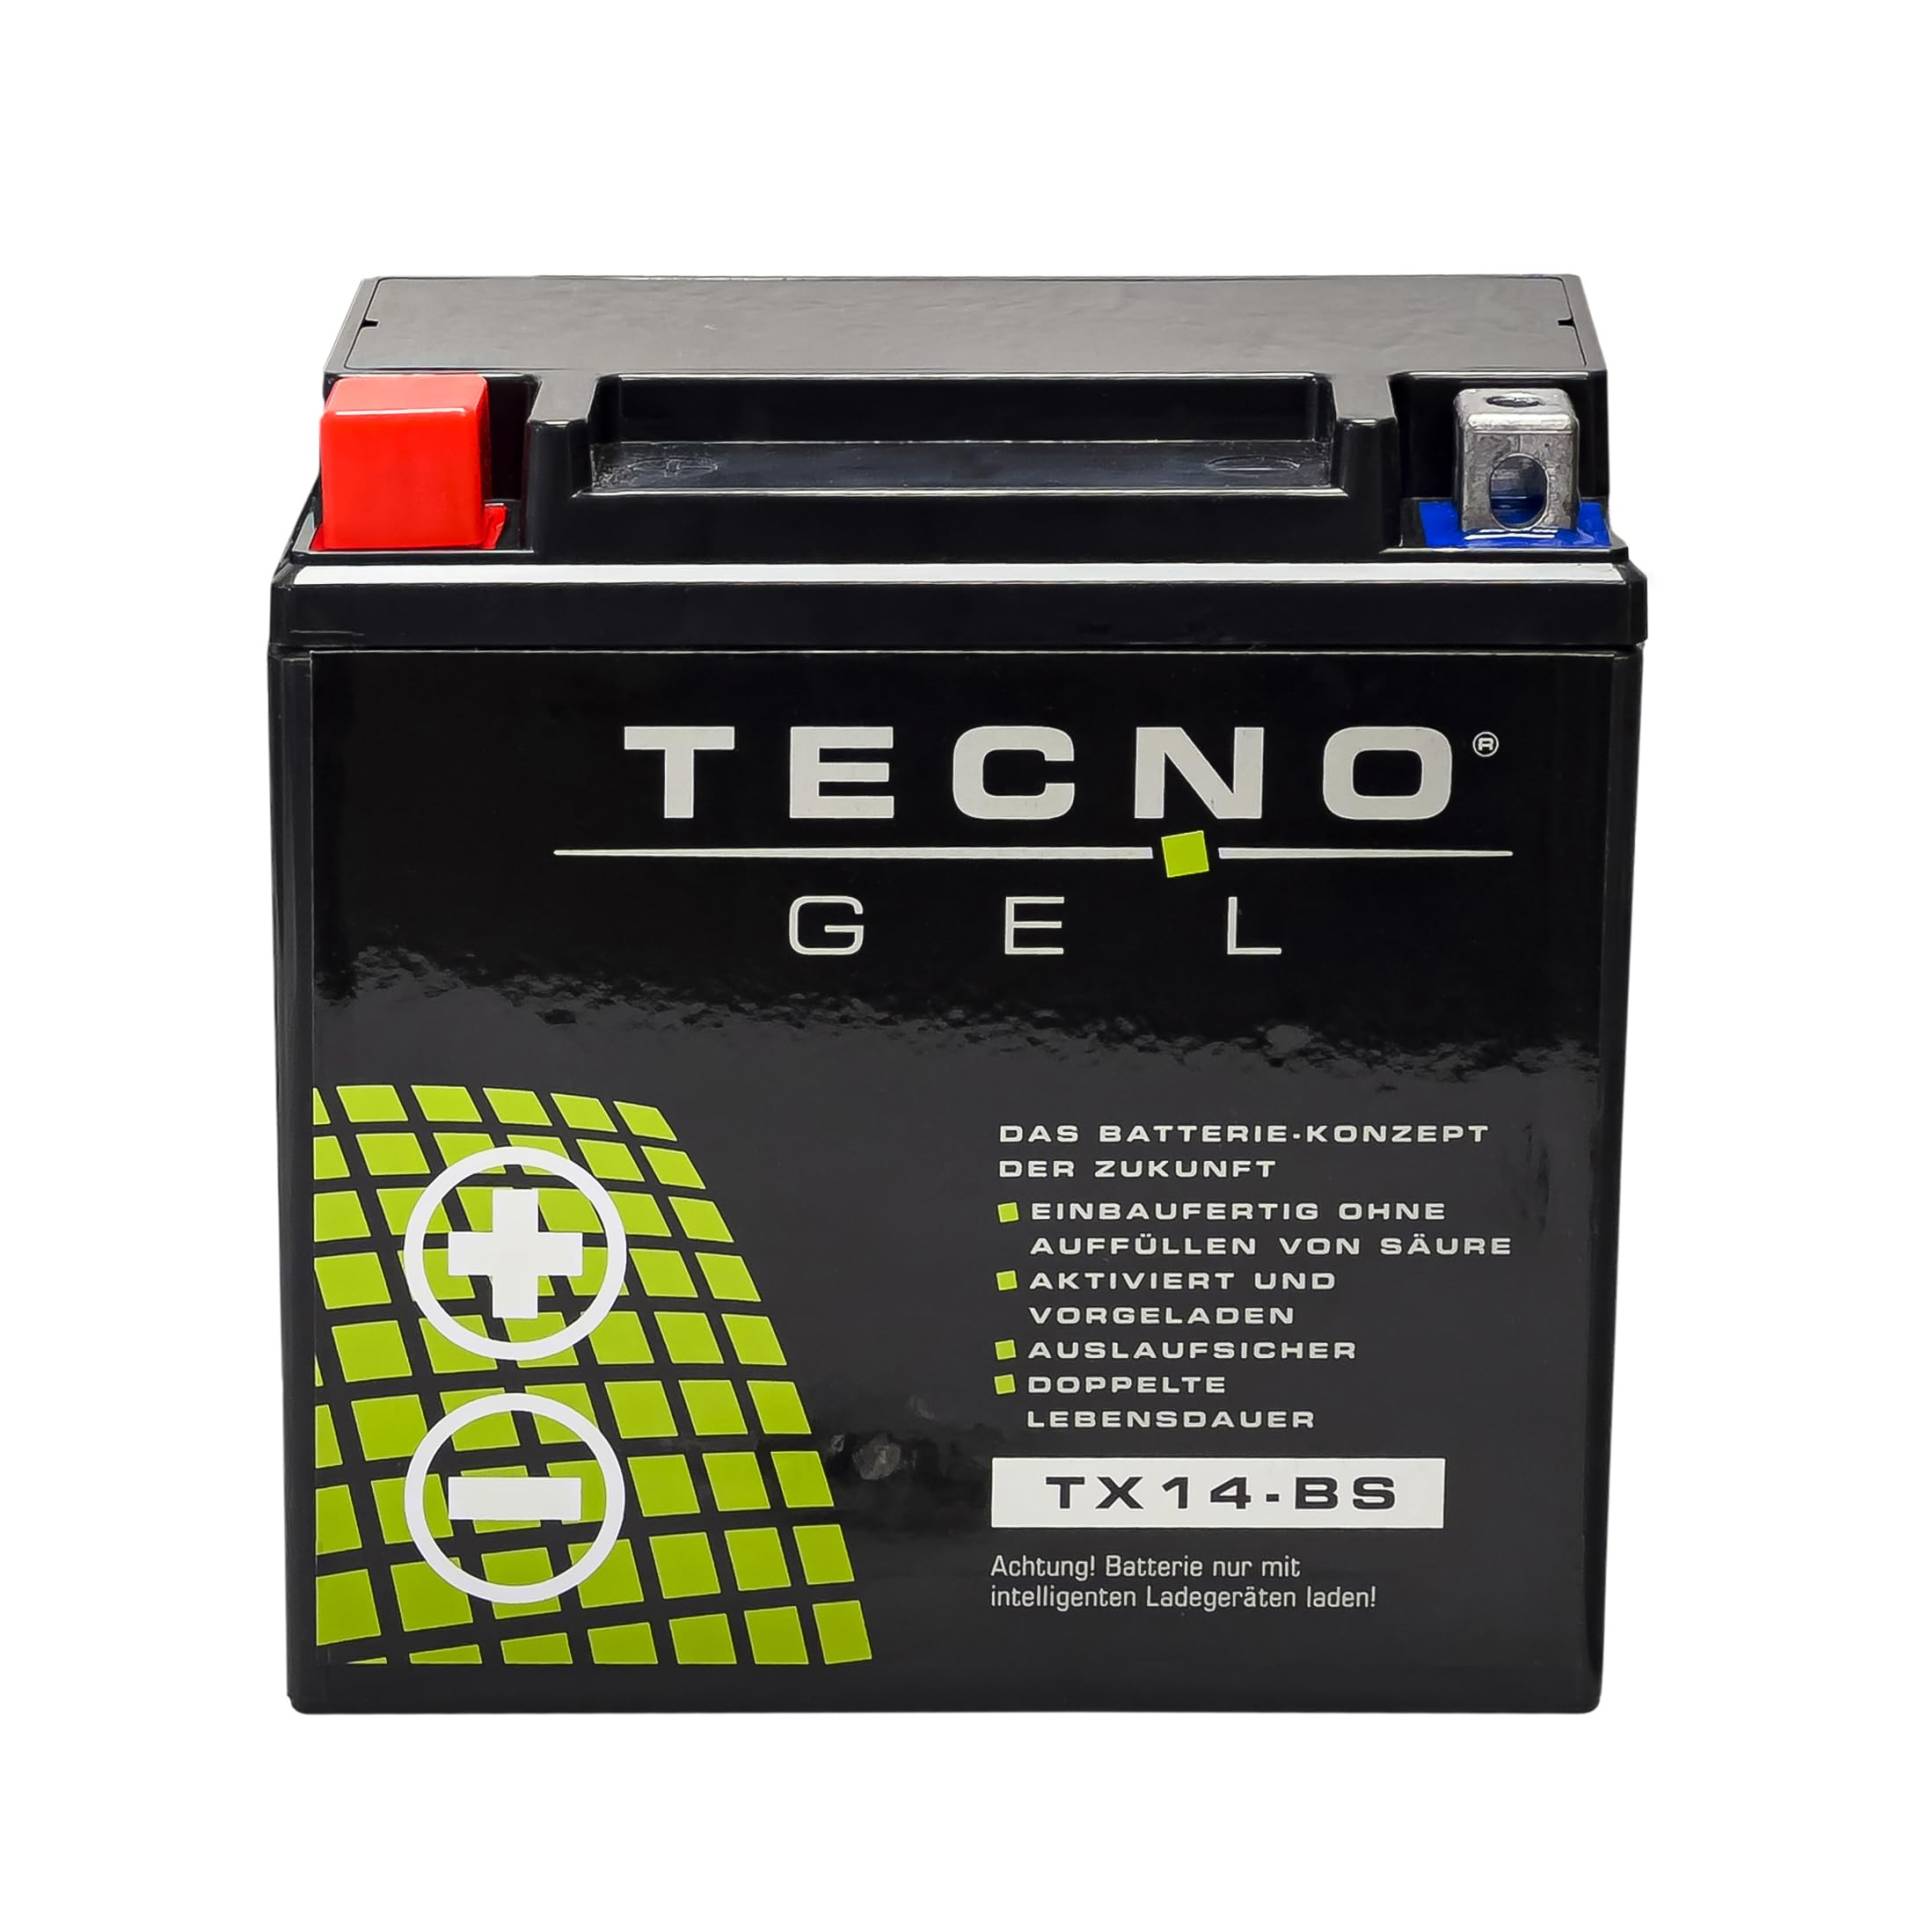 TECNO GEL Motorrad-Batterie für YTX14-BS, 12V Gel-Batterie 12 Ah (DIN 51214), 151x87x145 mm u.a. f Suzuki von TECNO-GEL